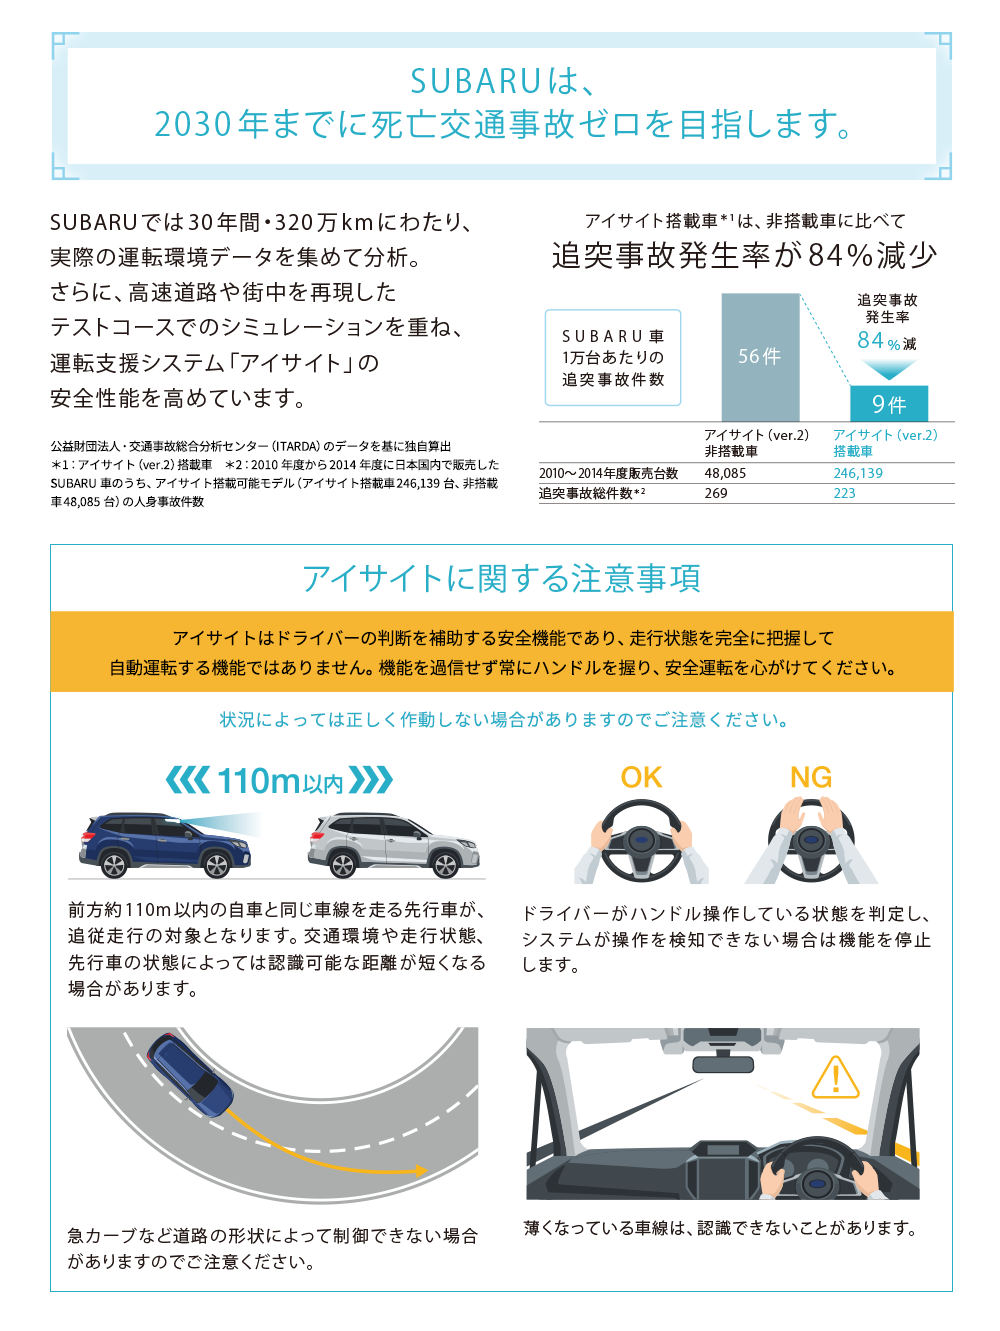 SUBARUは、2030年までに死亡交通事故ゼロを目指します。SUBARUでは30年間・320万kmにわたり、実際の運転環境データを集めて分析。さらに、高速道路や街中を再現したテストコースでのシミュレーションを重ね、運転支援システム「アイサイト」の安全性能を高めています。アイサイト搭載車*1は、非搭載車に比べて追突事故発生率が84%減少/公益財団法人・交通事故総合分析センター（ITARDA）のデータを基に独自算出 *1：アイサイト（ver.2）搭載車　＊2：2010年度から2014年度に日本国内で販売したSUBARU車のうち、アイサイト搭載可能モデル（アイサイト搭載車246,139台、非搭載車48,085台）の人身事故件数/アイサイトに関する注意事項/アイサイトはドライバーの判断を補助する安全機能であり、走行状態を完全に把握して自動運転する機能ではありません。機能を過信せず常にハンドルを握り、安全運転を心がけてください。状況によっては正しく作動しない場合がありますのでご注意ください。前方約110m以内の自車と同じ車線を走る先行車が、追従走行の対象となります。交通環境や走行状態、先行車の状態によっては認識可能な距離が短くなる場合があります。/ドライバーがハンドル操作している状態を判定し、システムが操作を検知できない場合は機能を停止します。/急カーブなどの道路の形状によって制御できない場合がありますのでご注意ください。/薄くなっている斜線は認識できないことがあります。